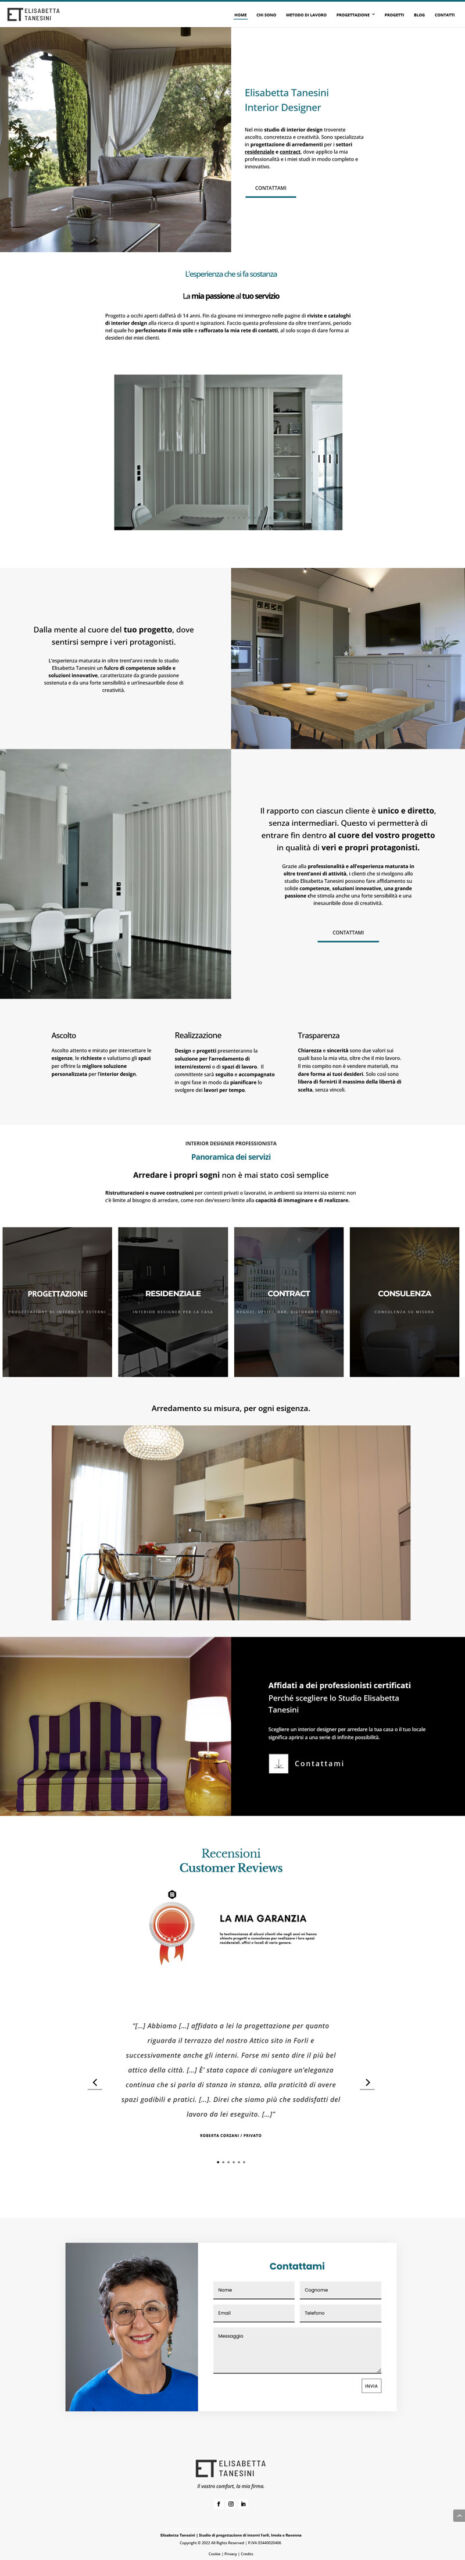 realizzazione sito internet interior designer